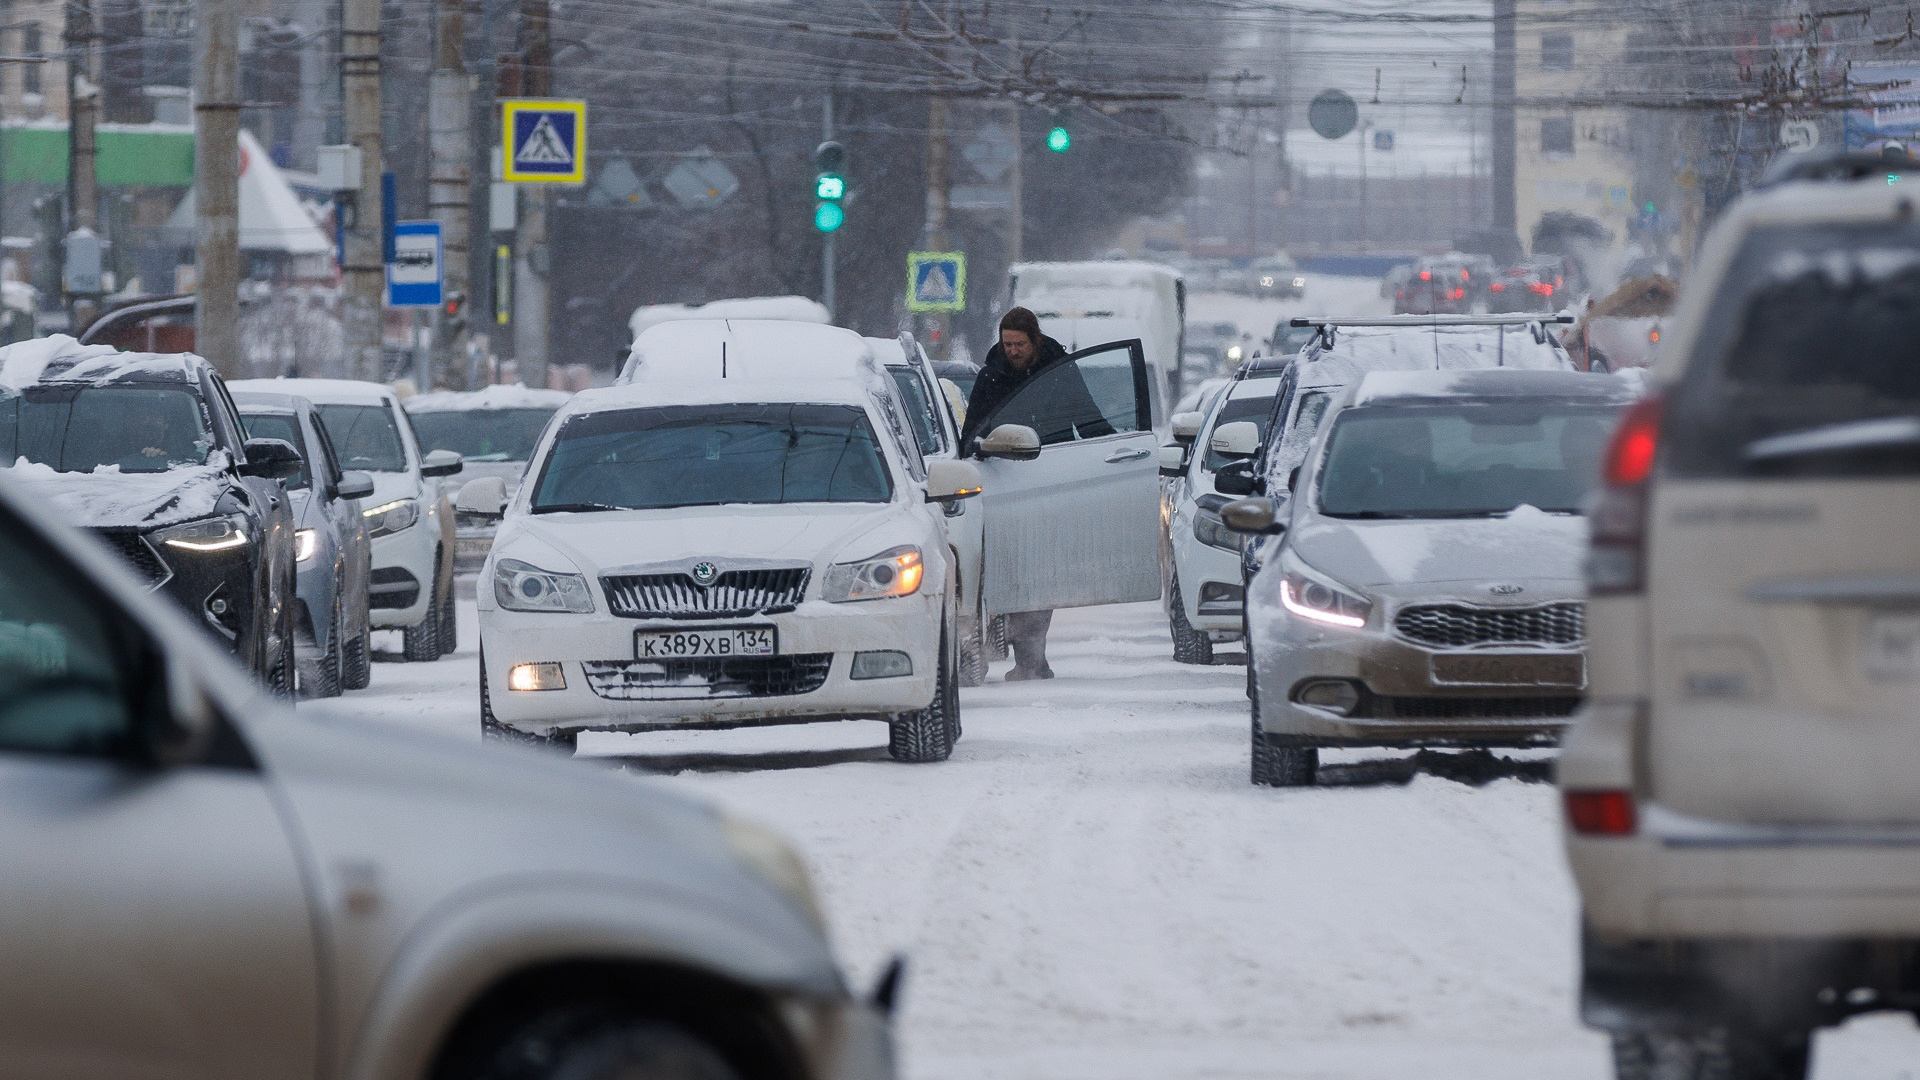 Сожмите зубы и терпите до понедельника: синоптики спрогнозировали жуткие холода в Волгограде и области